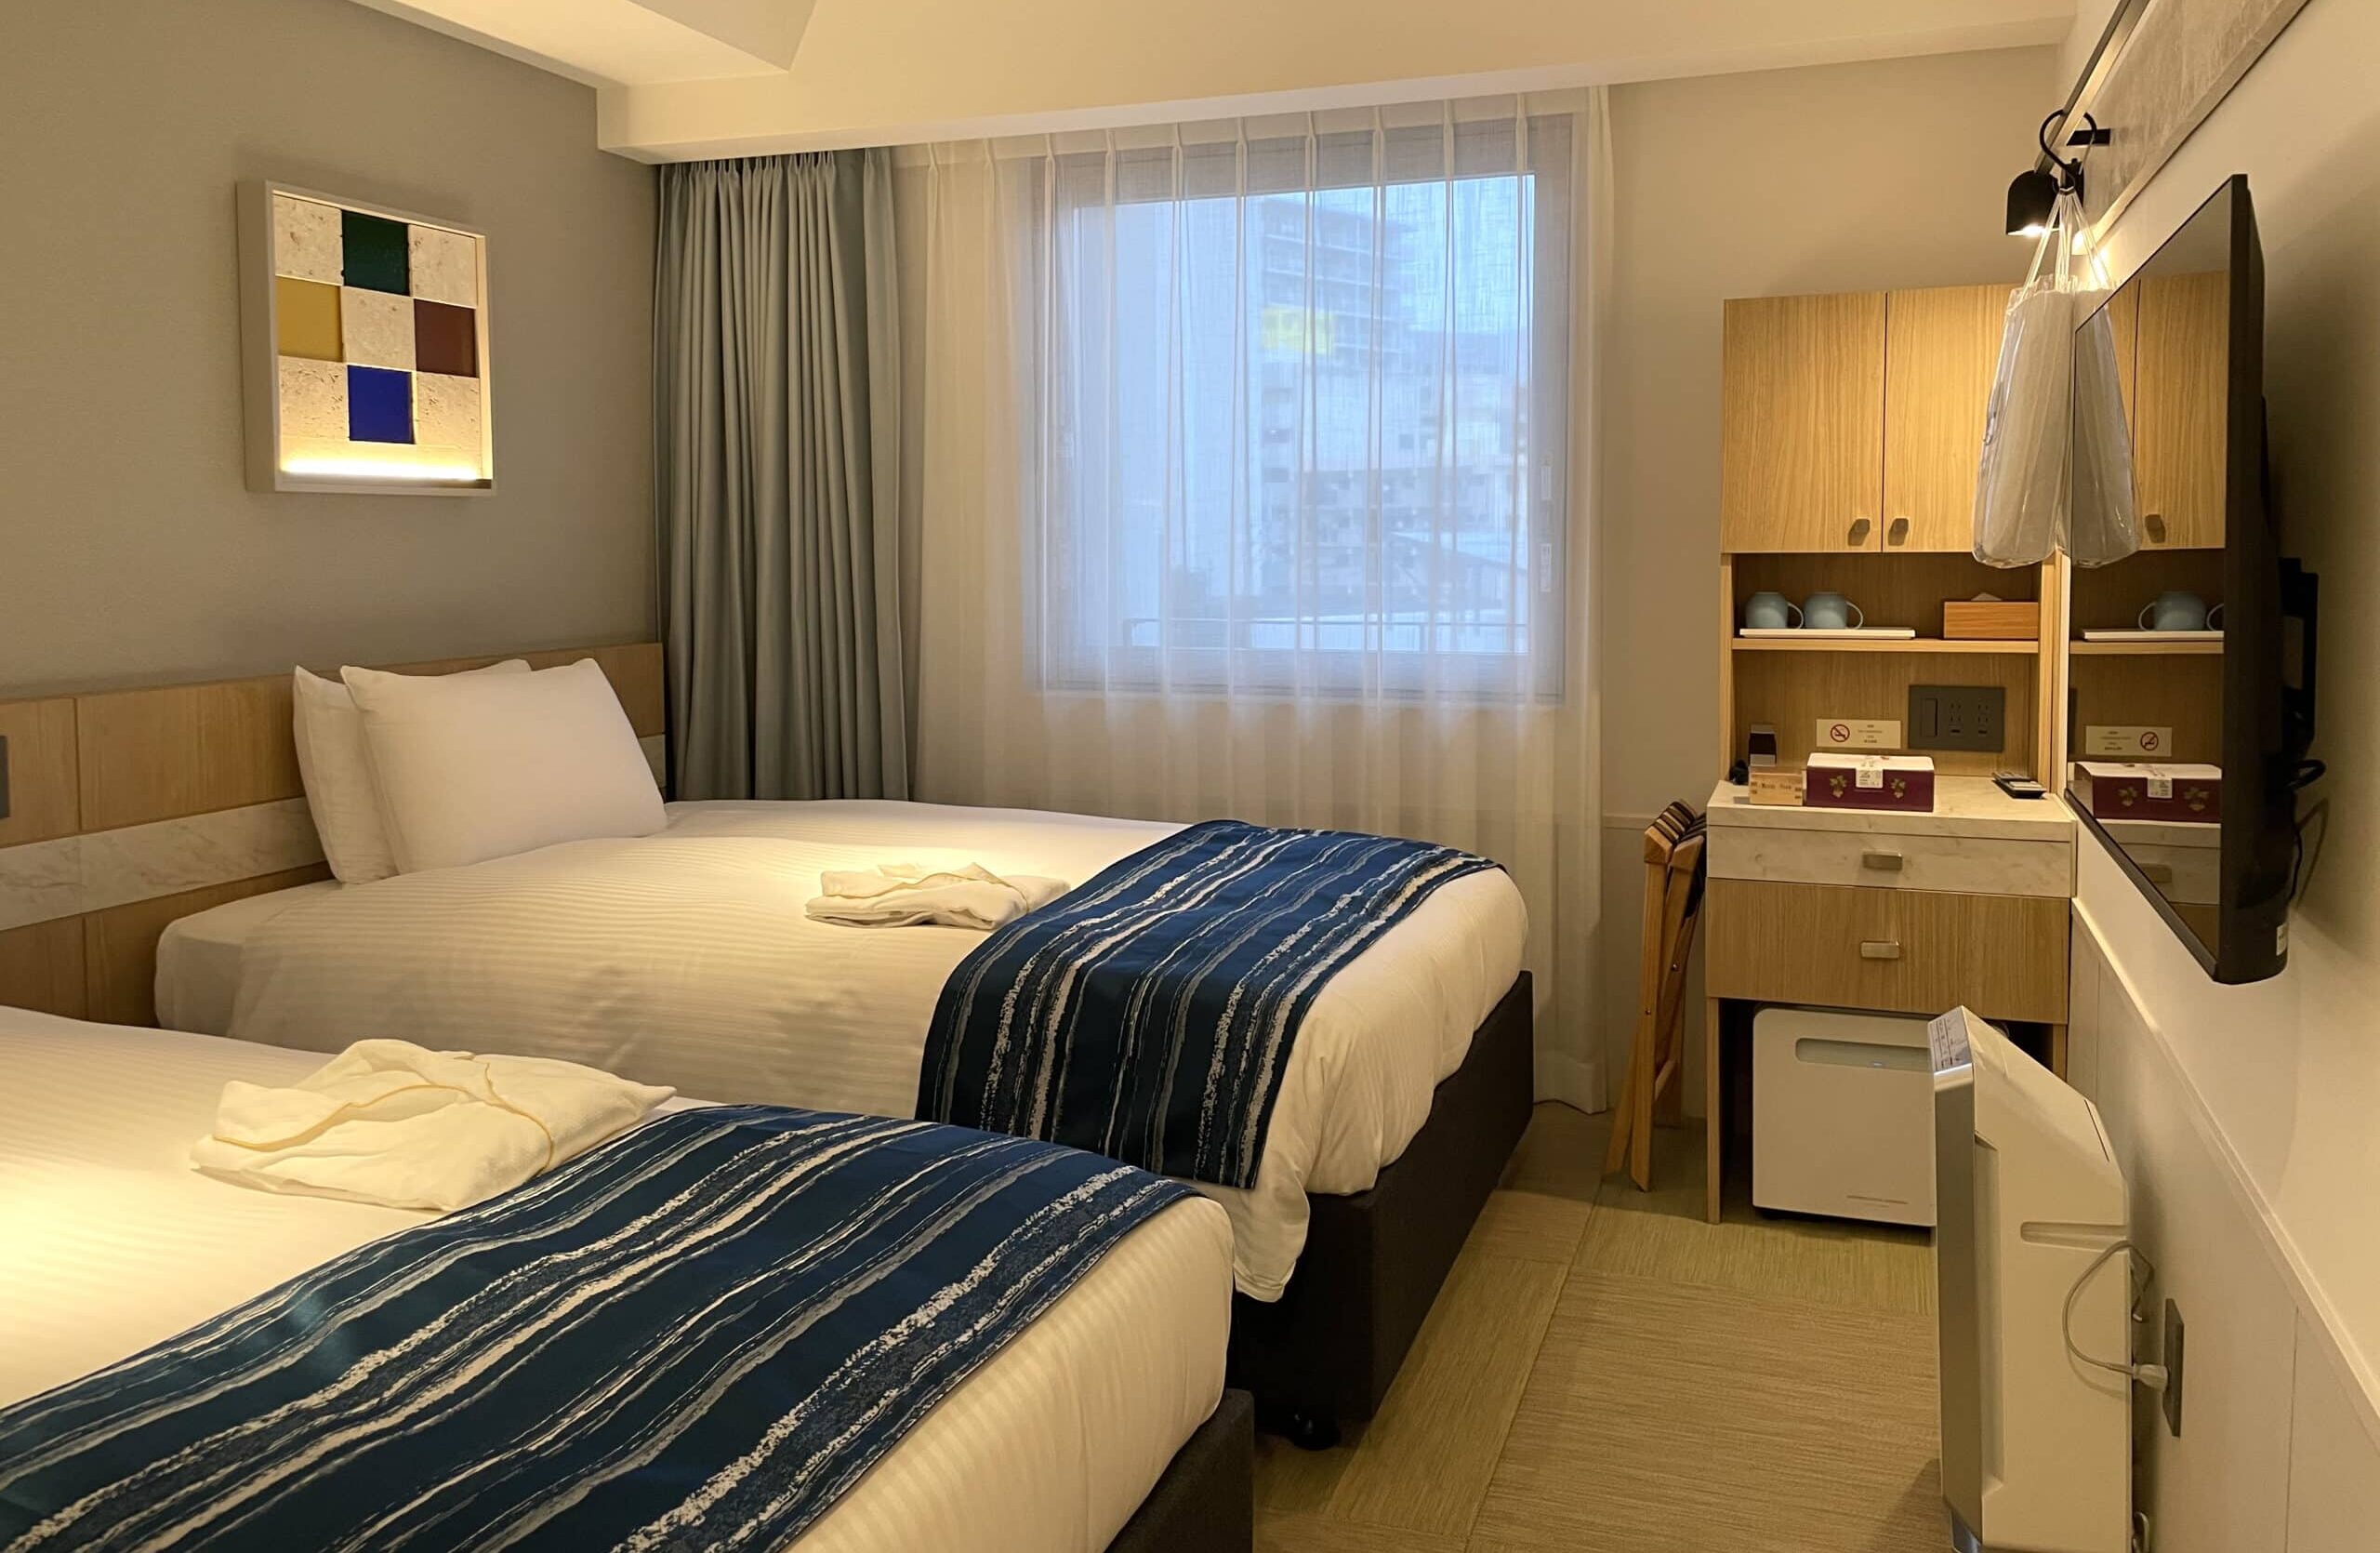 沖繩逸之彩深層溫泉酒店Okinawa Hinode Resort & Hot Spring Hotel Room 房間